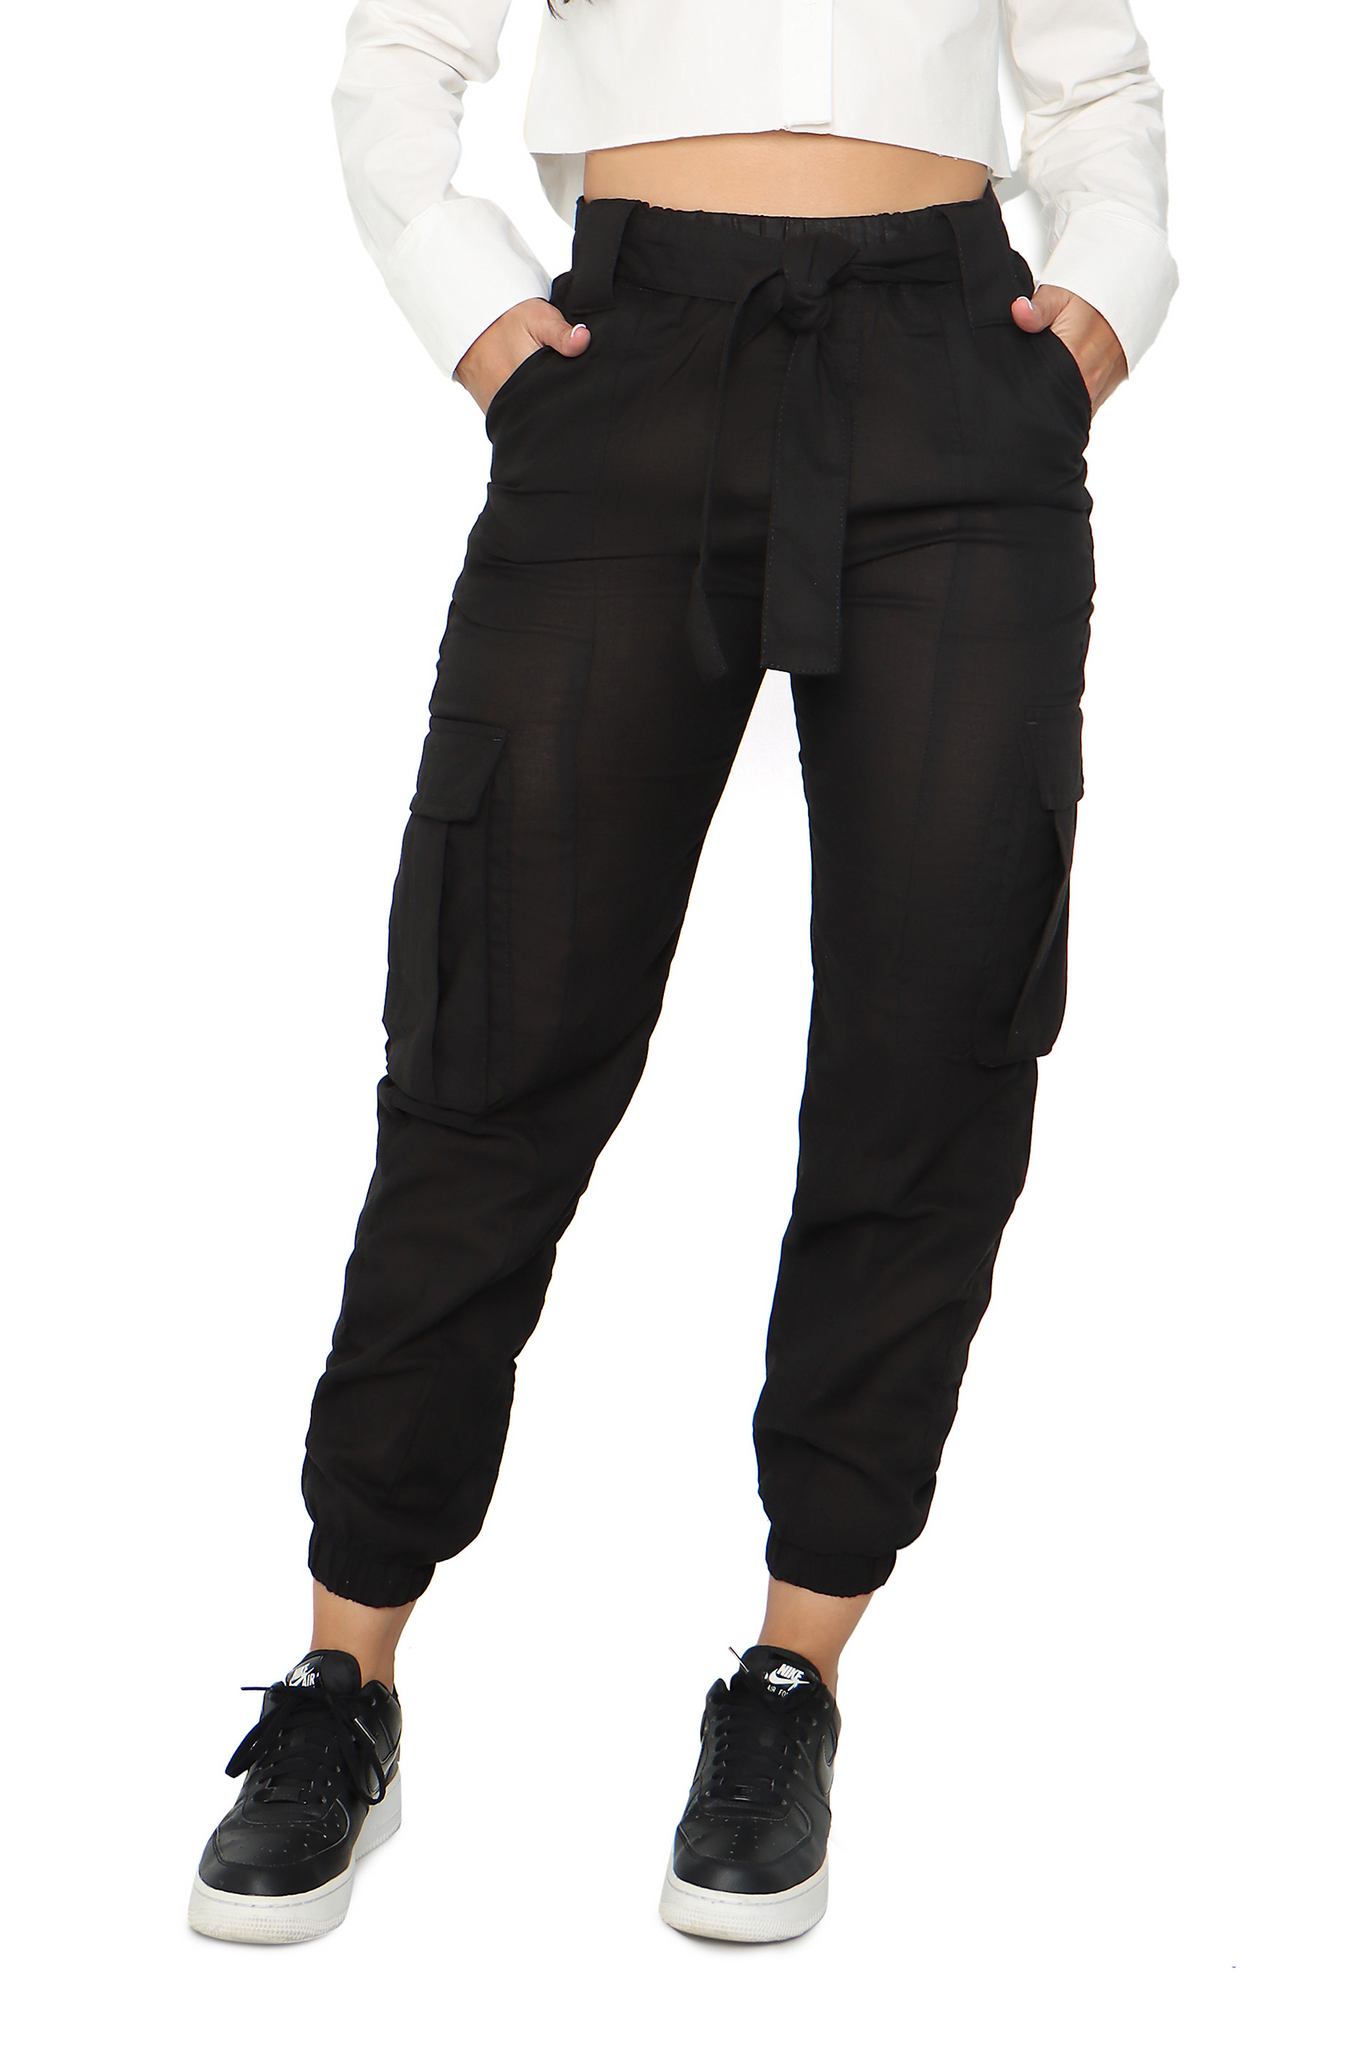 Pantalón tipo jogger con bolsillos laterales y cinturón- P52030